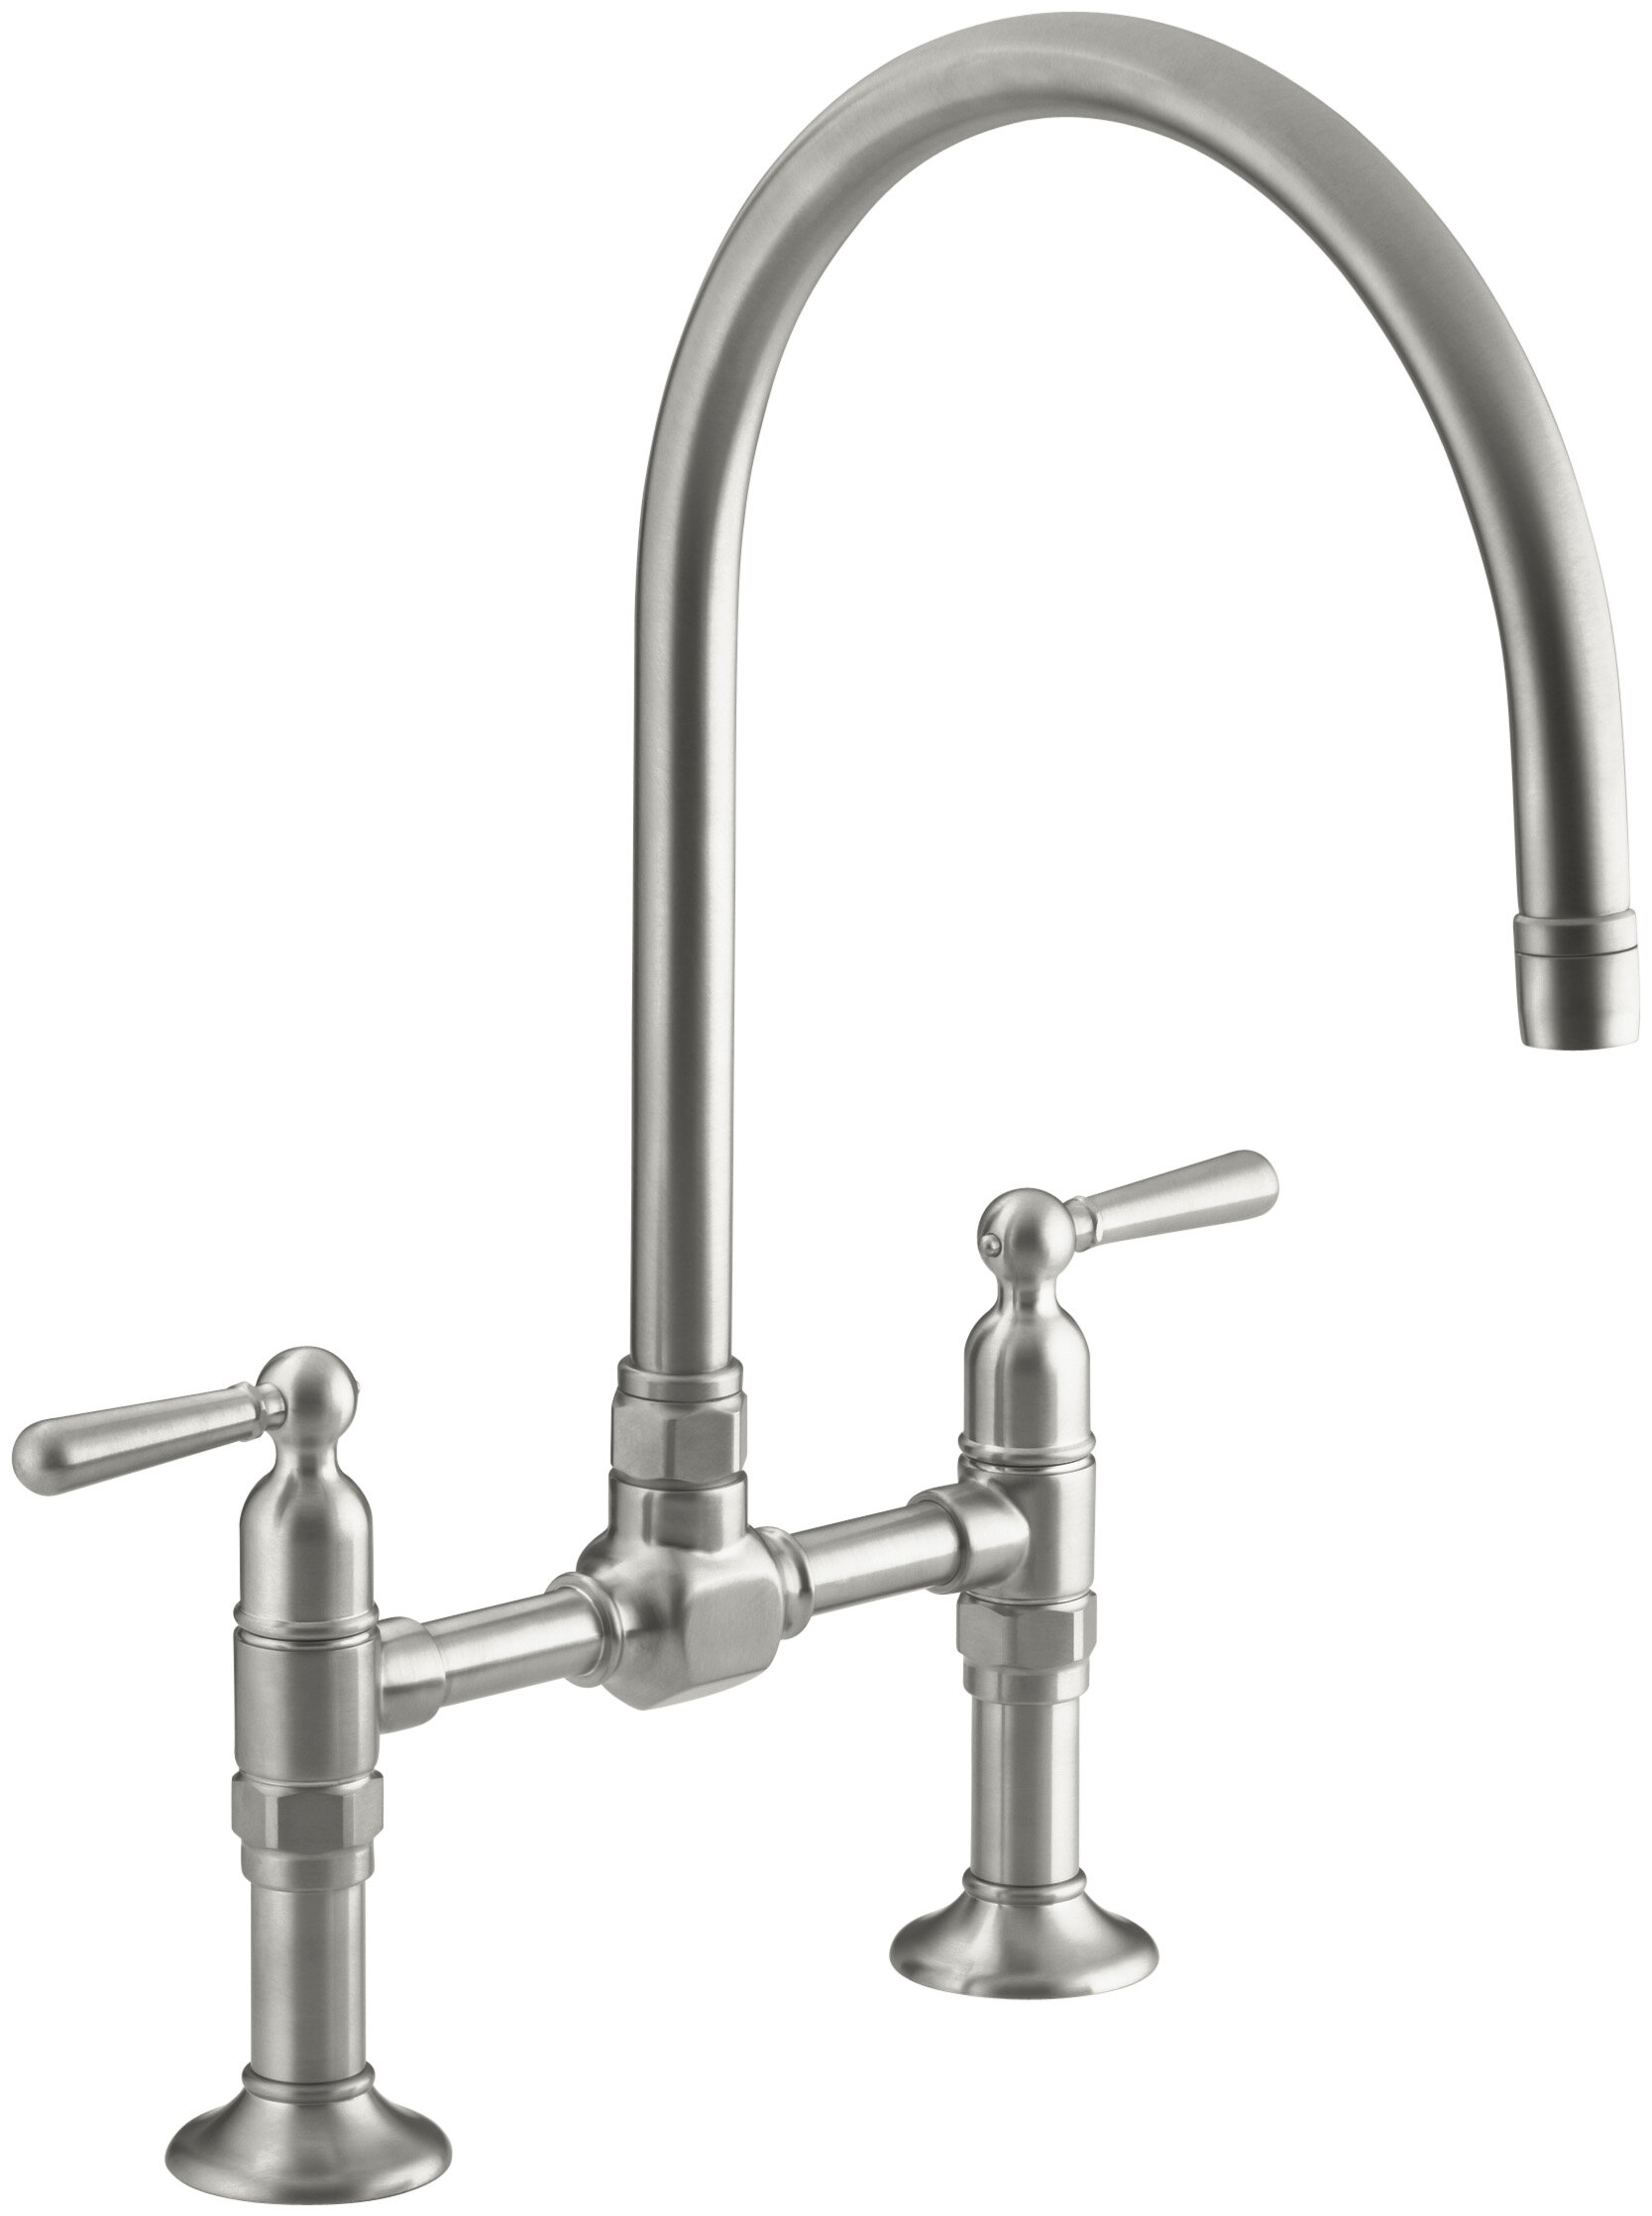 Kohler Hirise Two Hole Deck Mount Bridge Kitchen Sink Faucet With 10 1 4 Gooseneck Spout And Lever Handles Wayfairca